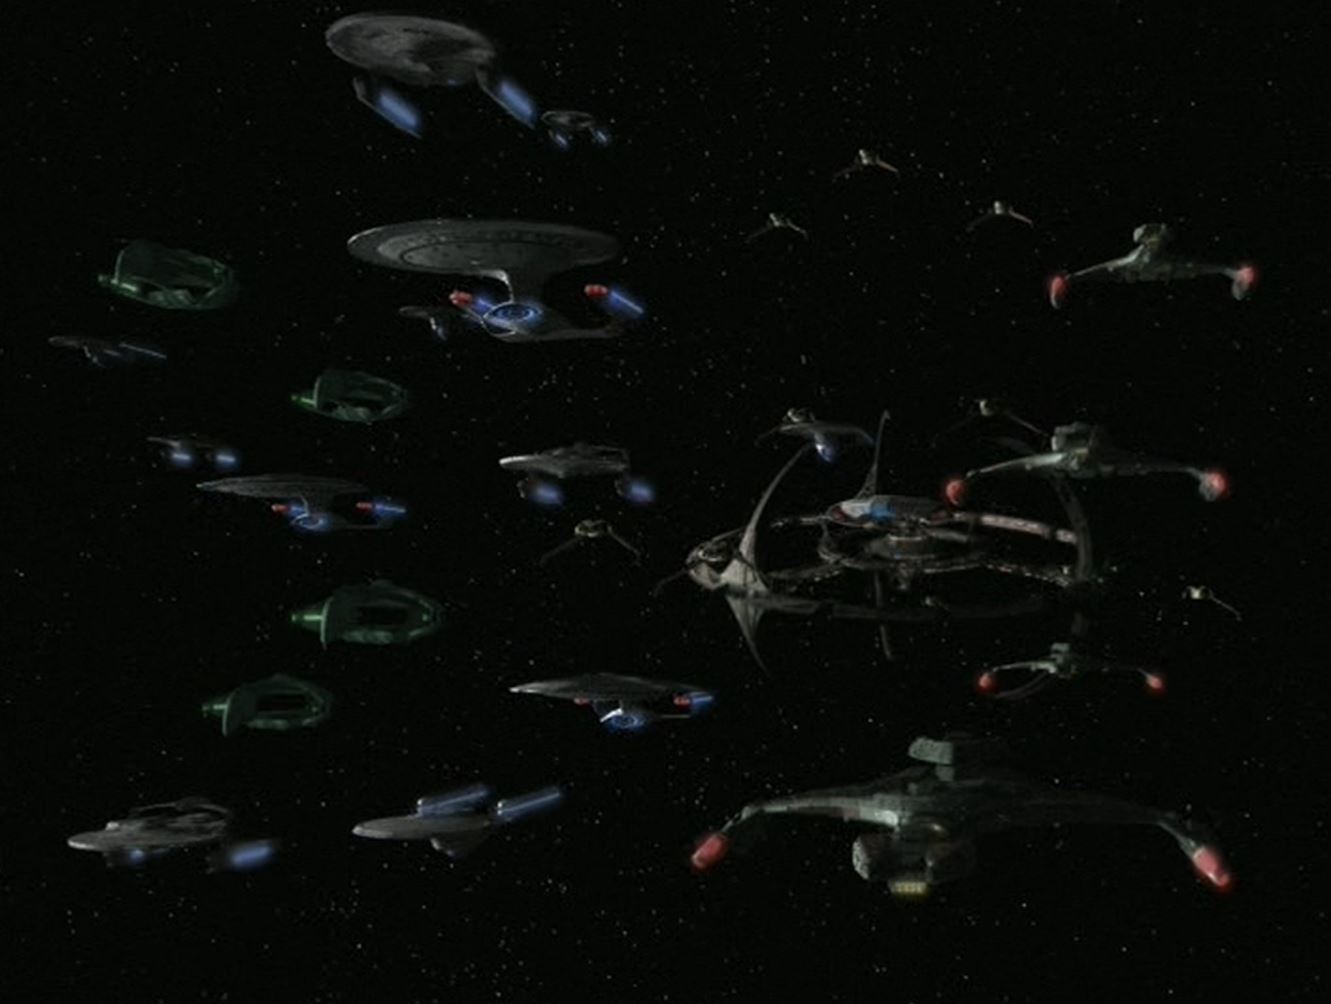 Federation_Alliance_fleet_departs_DS9.jpg